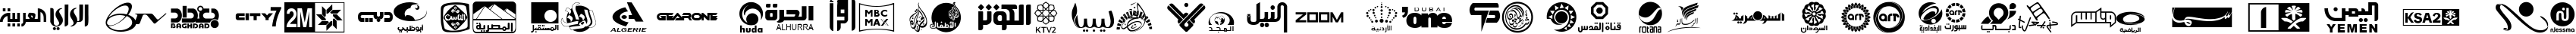 Пример написания английского алфавита шрифтом Arab TV logos